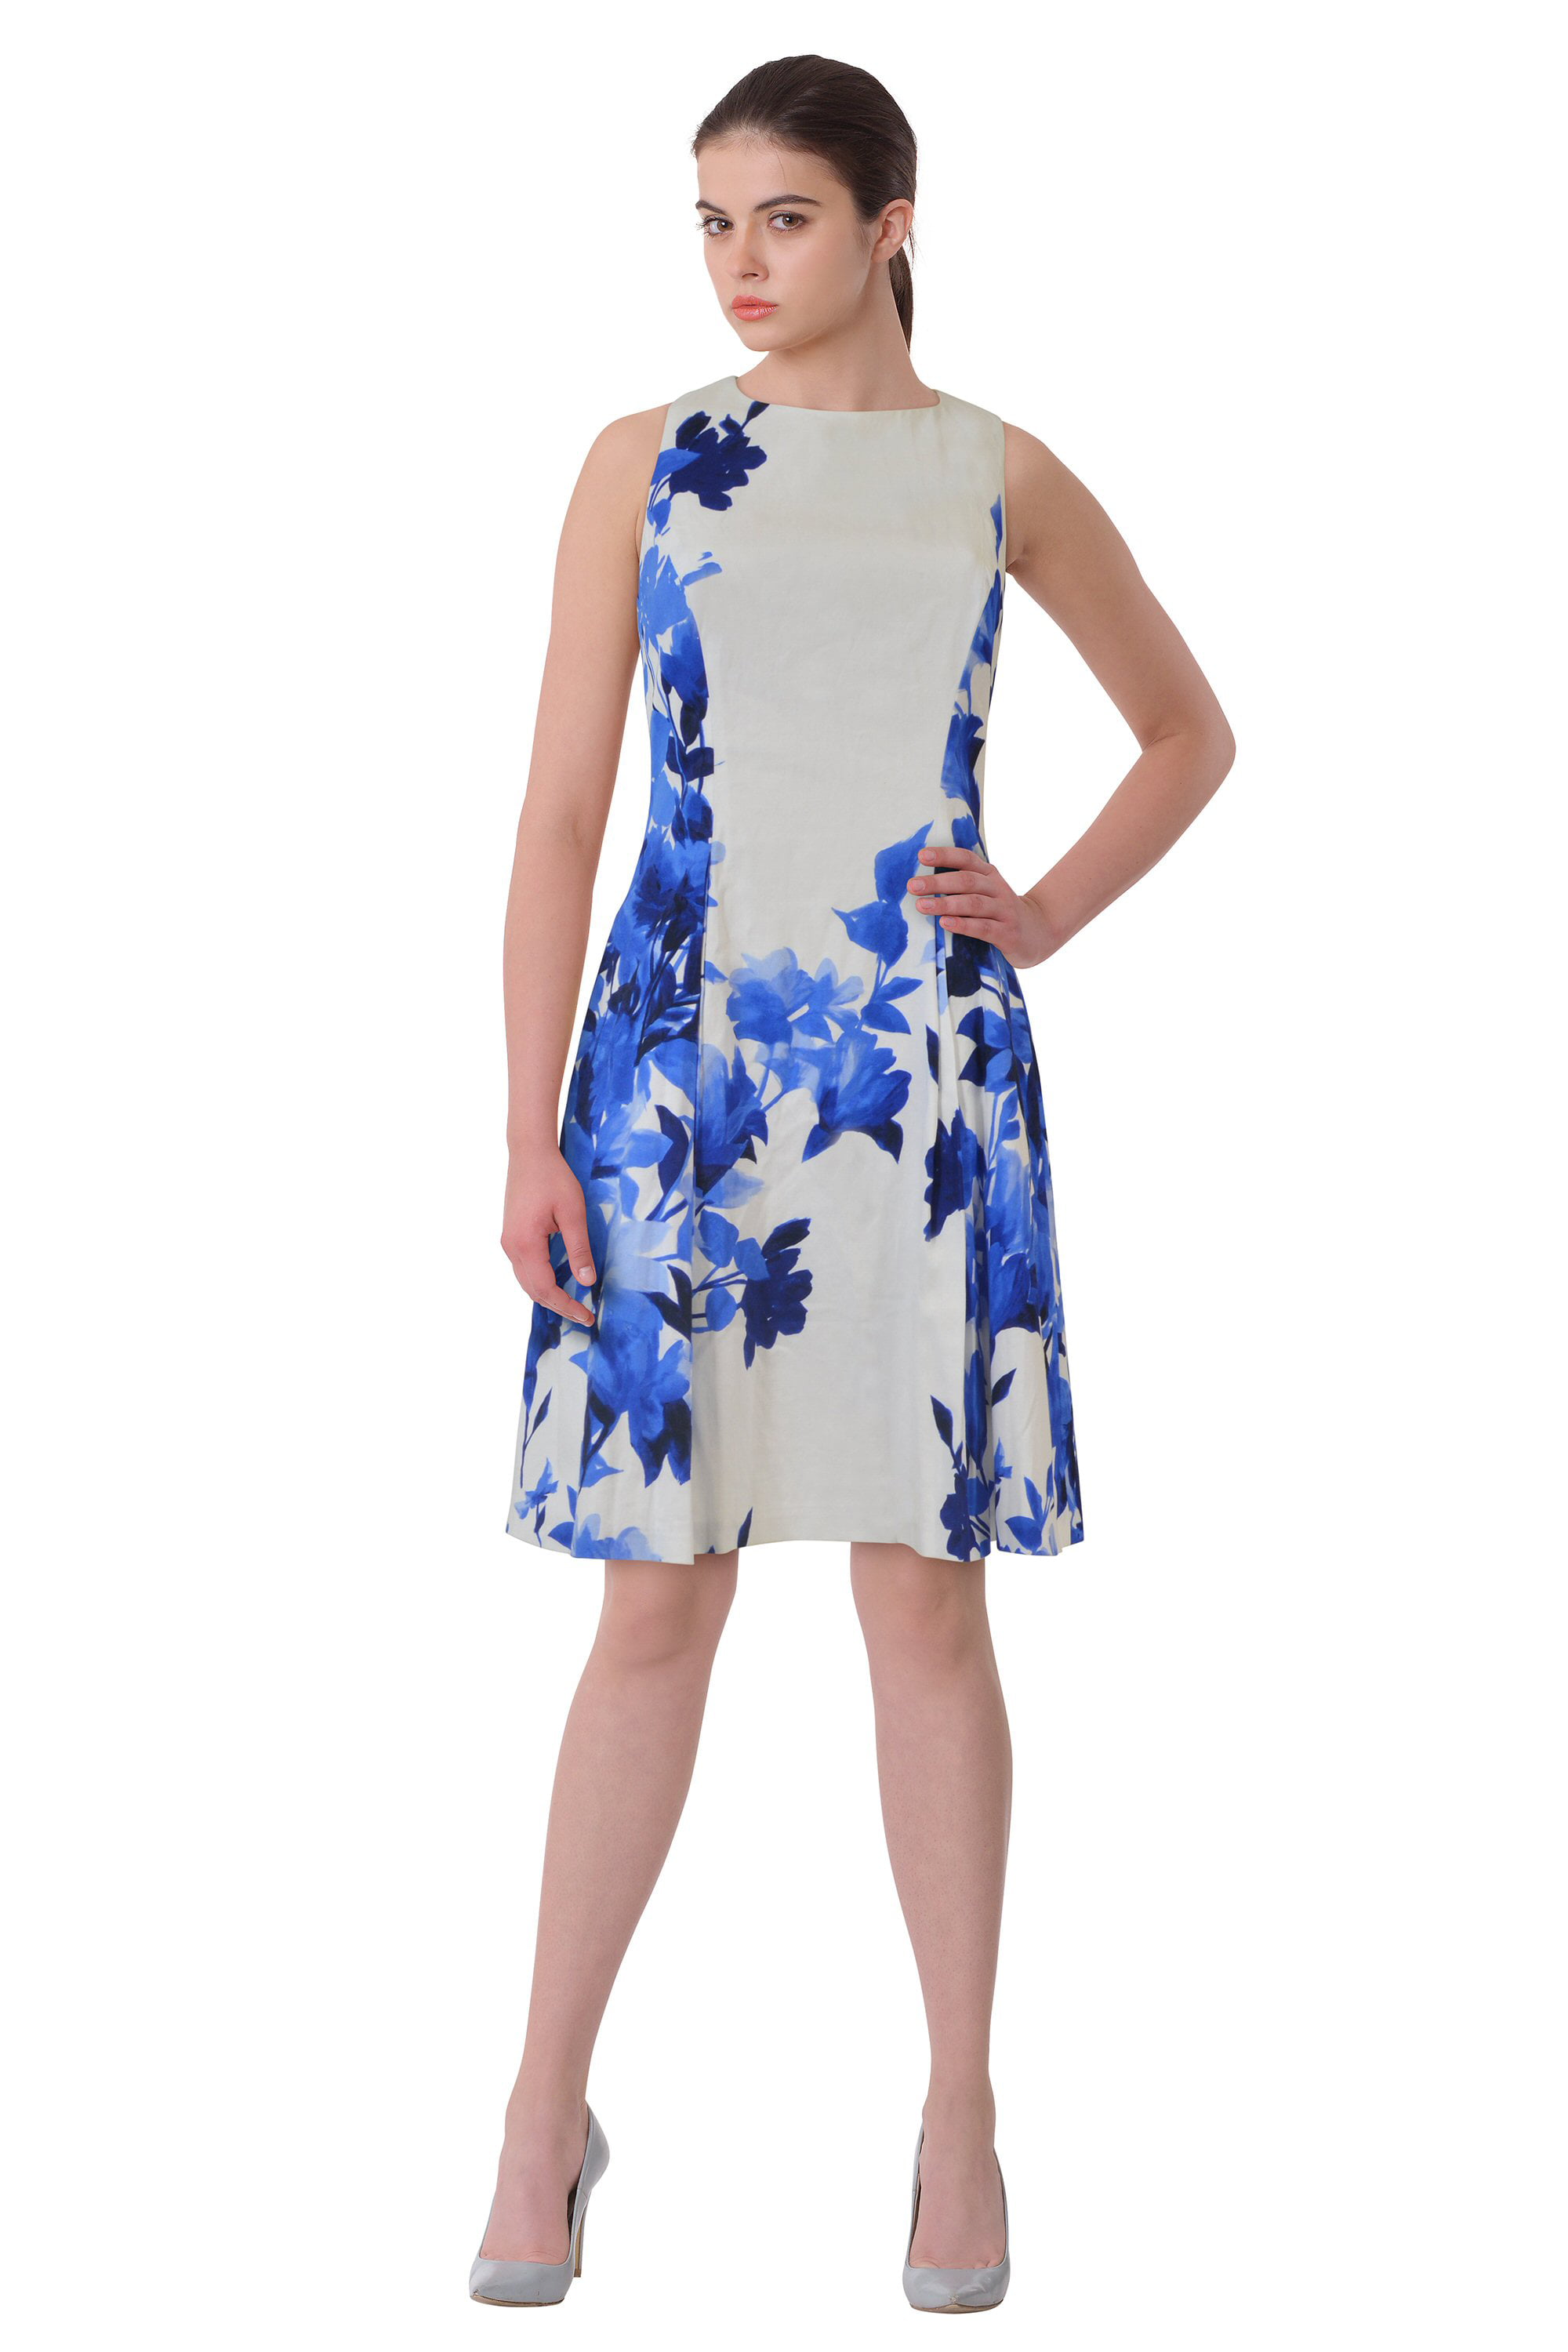 ralph lauren floral print dress